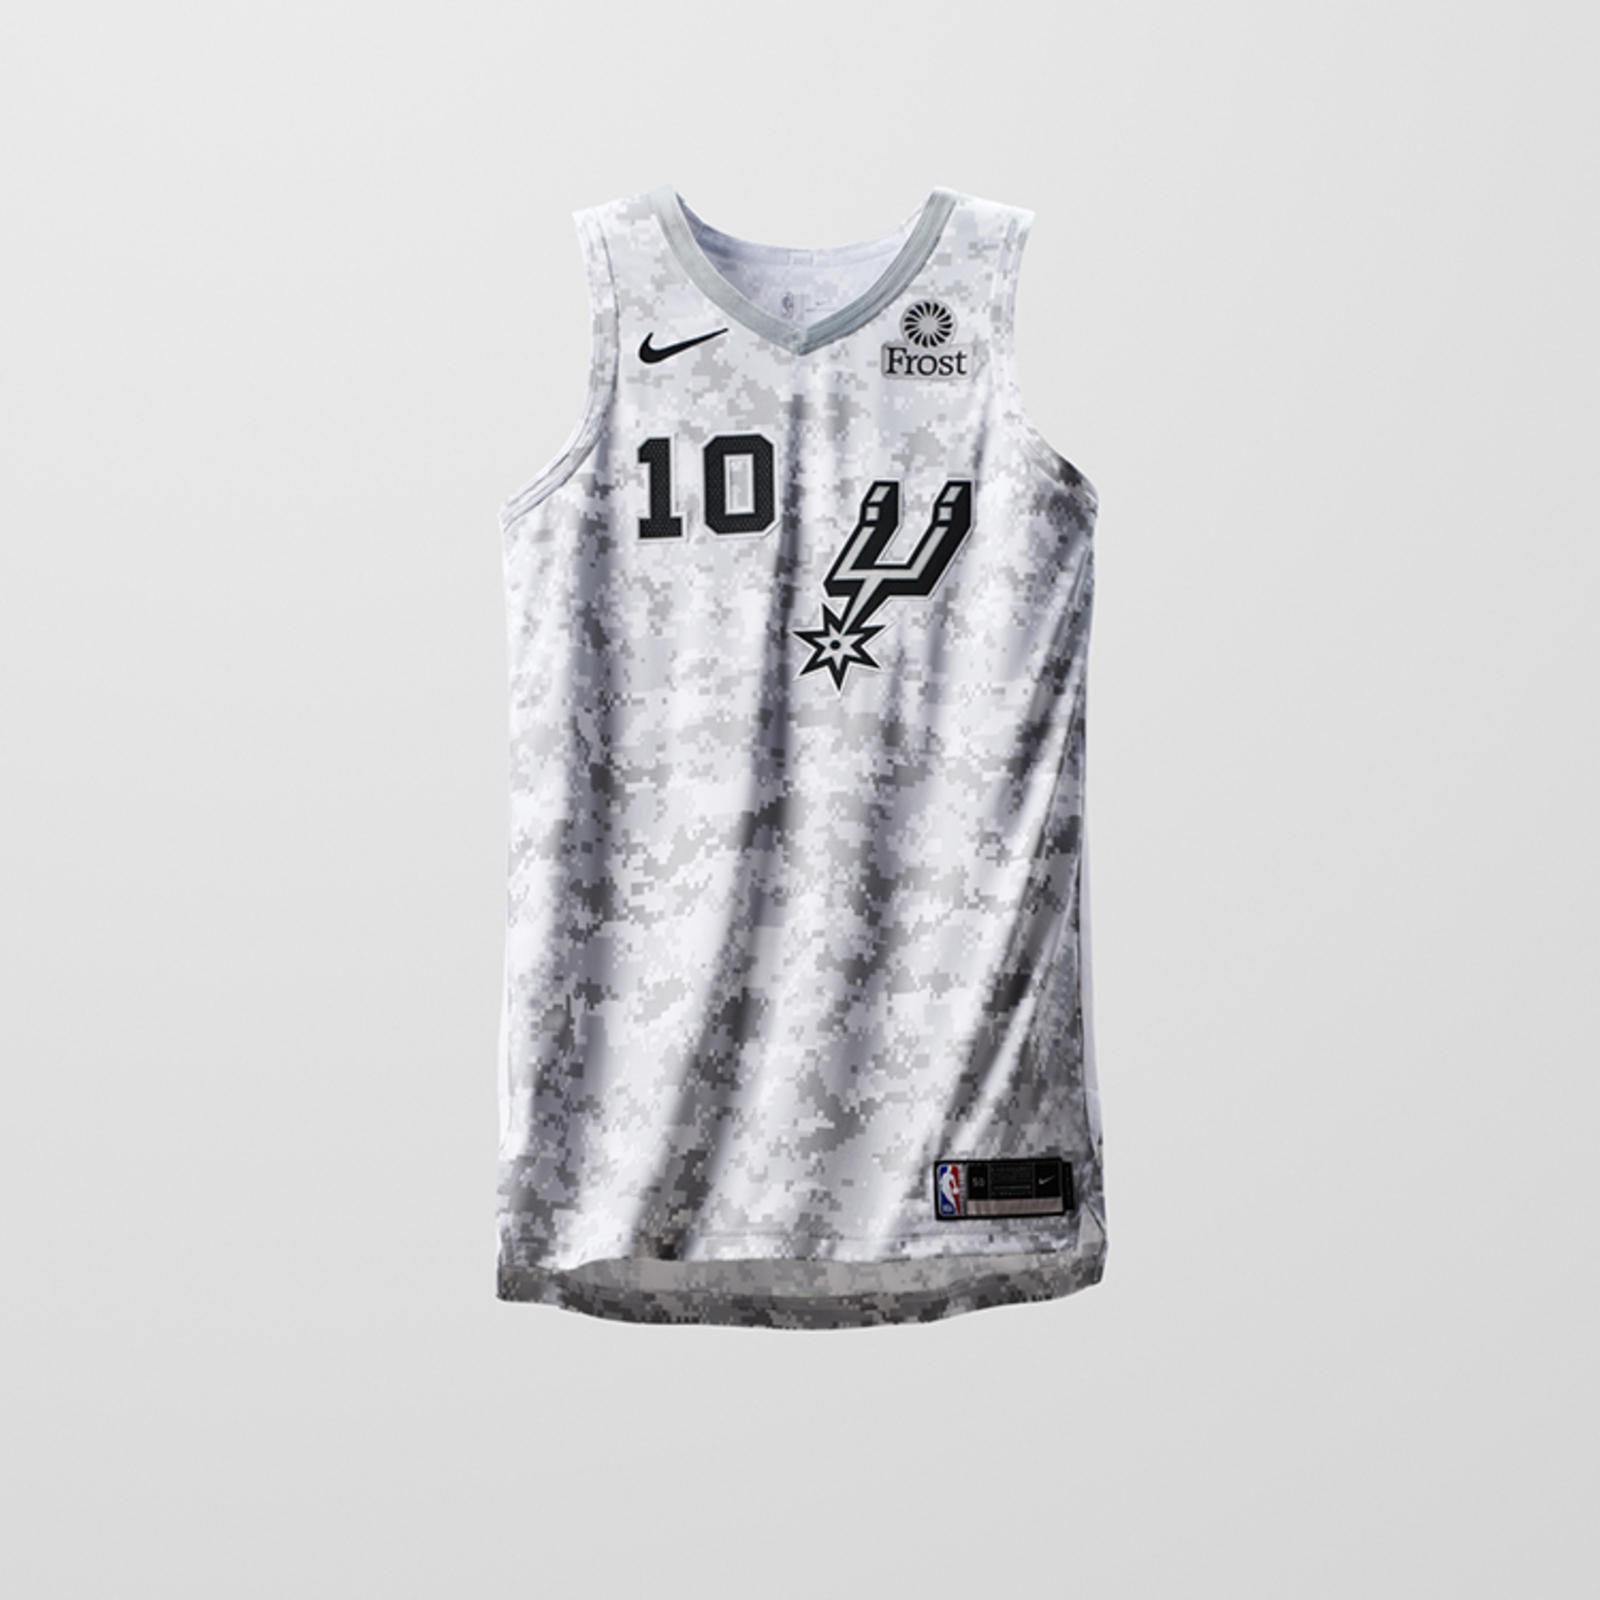 Ngắm nhìn bộ sưu tập áo đấu NBA mới Earned Edition của Nike, dành riêng cho các đội Playoffs - Ảnh 5.